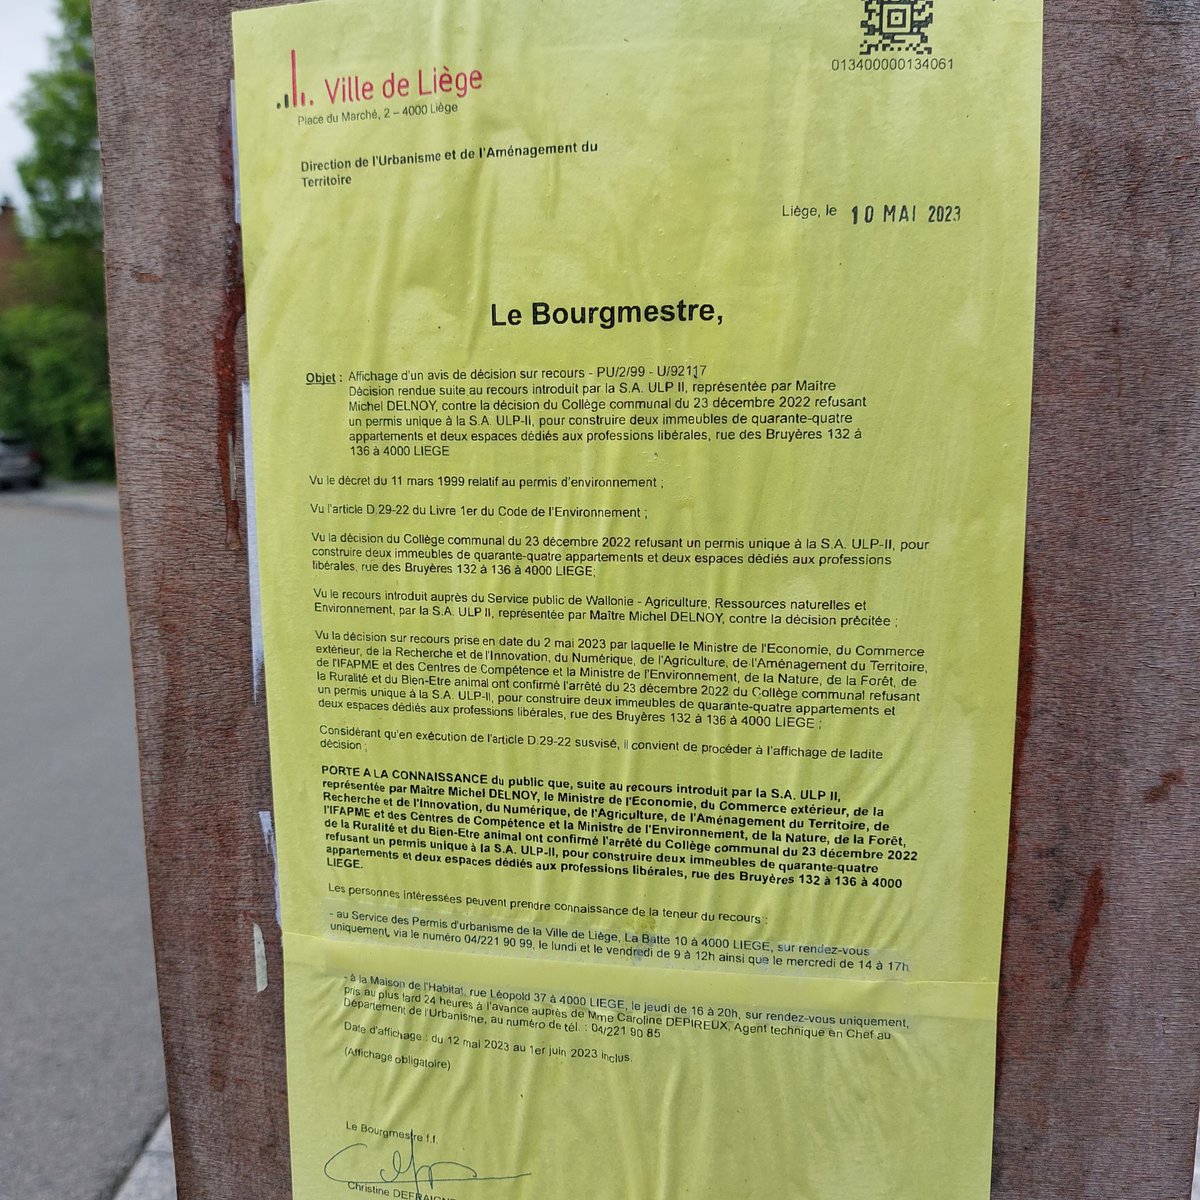 La RW a confirmé le refus de la Ville de Liège d'octroyer un permis pour le vilain projet immobilier d'Immobel dans le Bois d'Avroy 😃😃😃
#ccliege #stopbeton